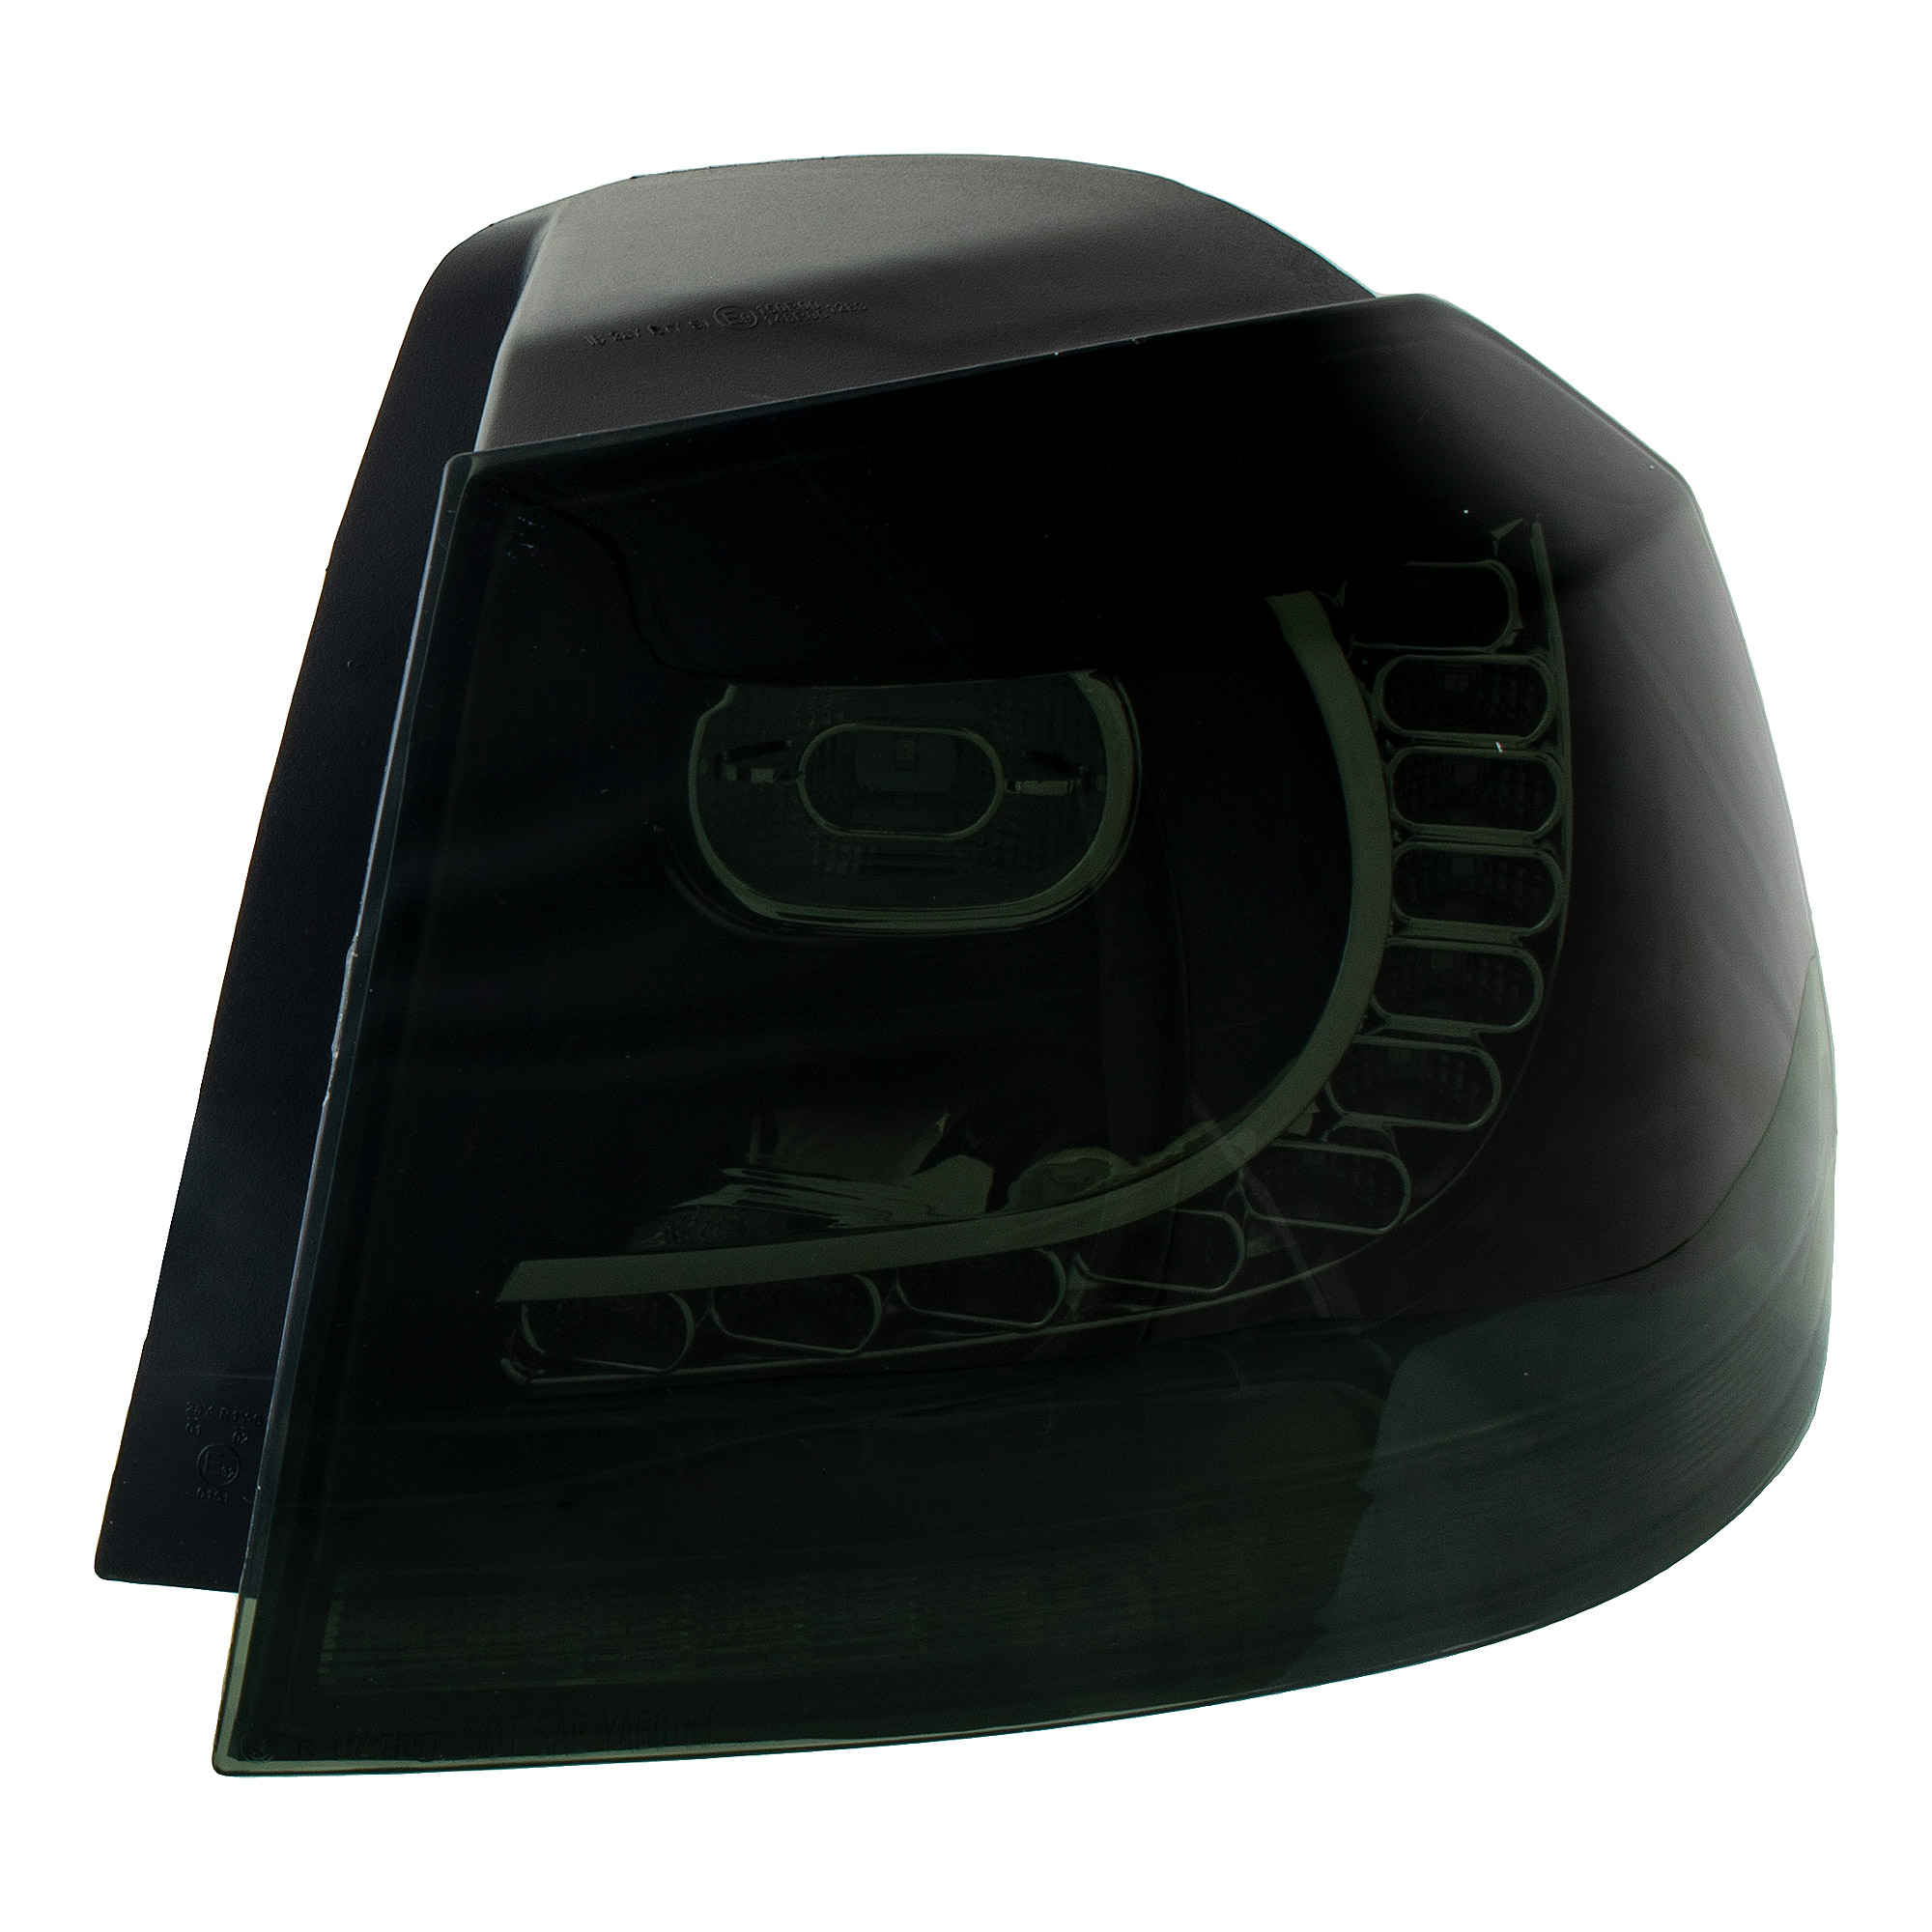 LED Rückleuchten dynamisch Blinker für VW Golf 6 Bj.08-13 Klarglas smoke schwarz